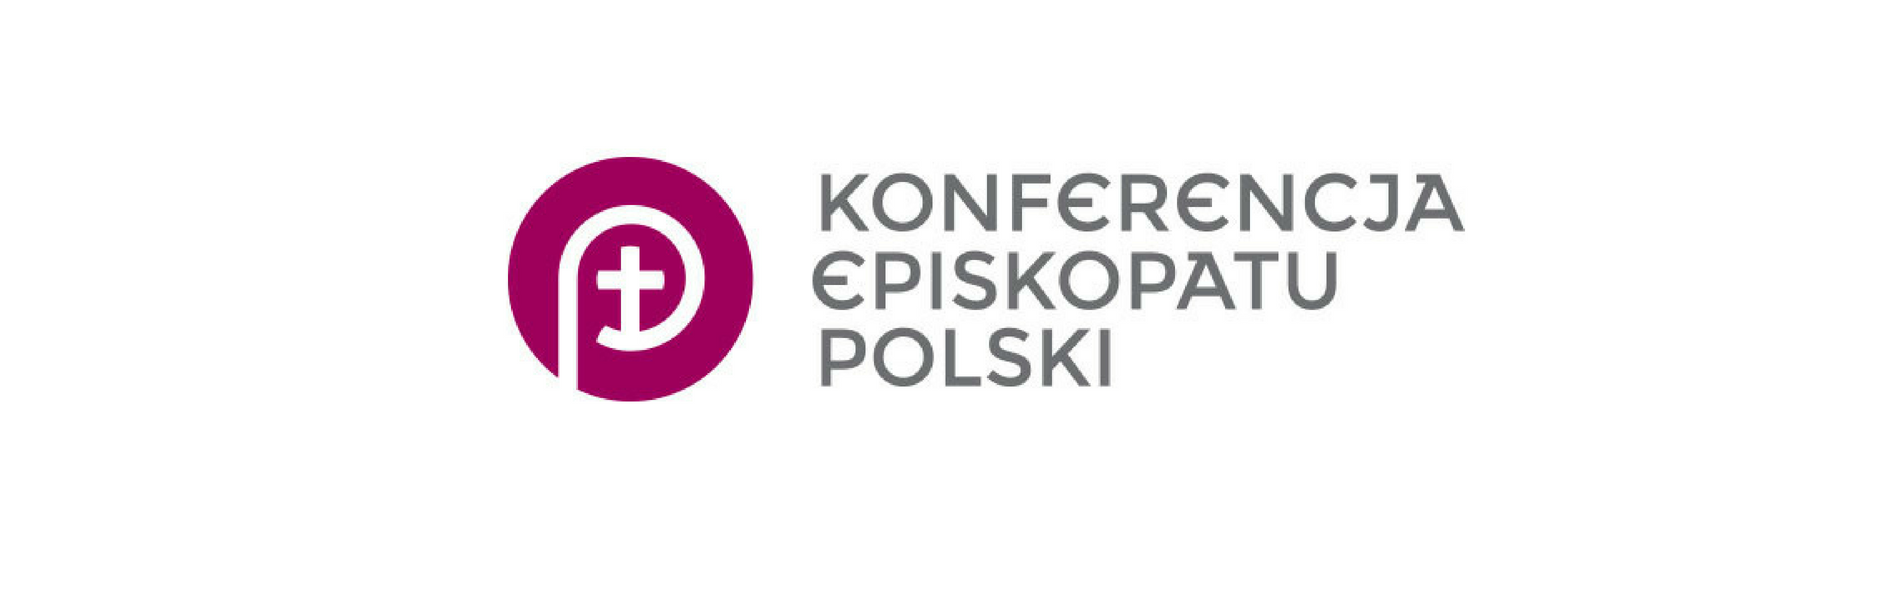 Komunikat z posiedzenia Rady Stałej Konferencji Episkopatu Polski